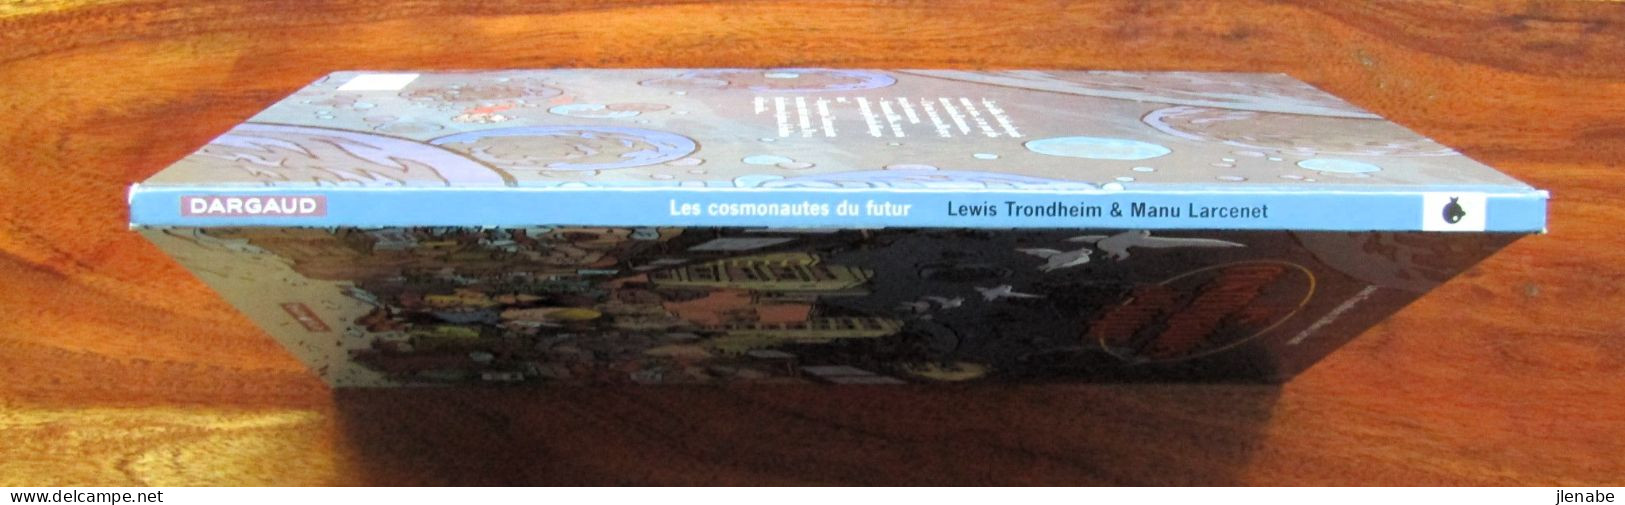 Cosmonautes ( Les ) Du Futur Tome 1 EO 2000 Par TRONDHEIM LARCENET - Cosmonautes Du Futur, Les